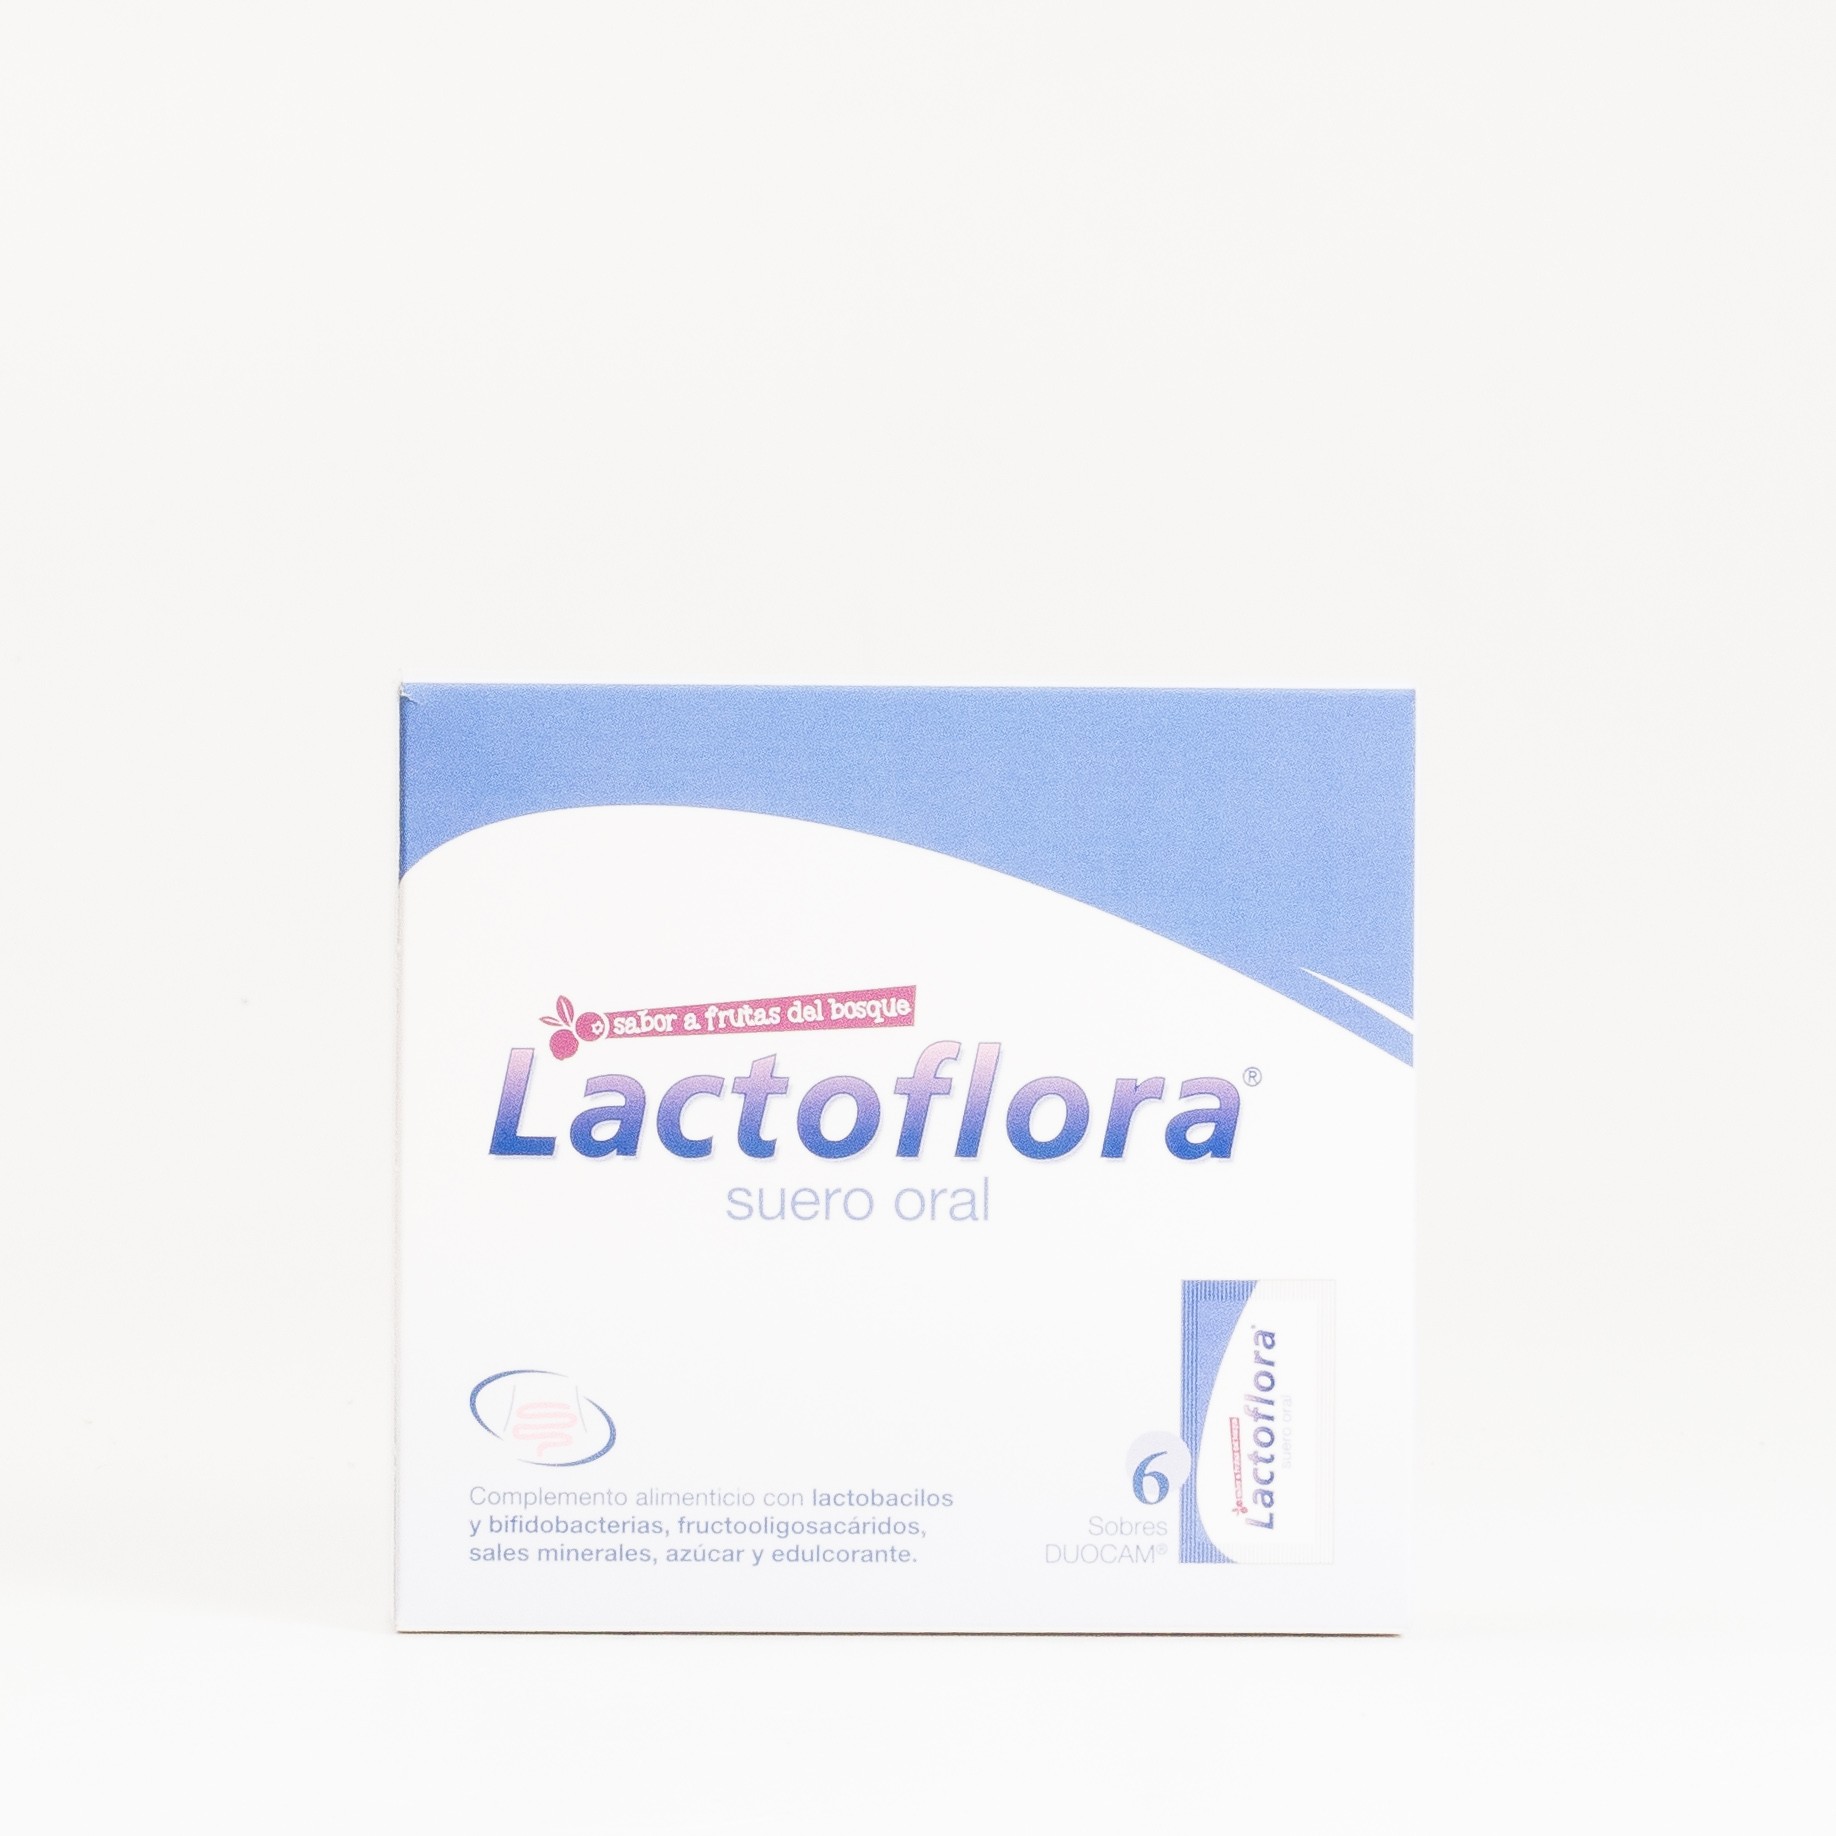 Lactoflora Suero Oral, 6 Sobres.